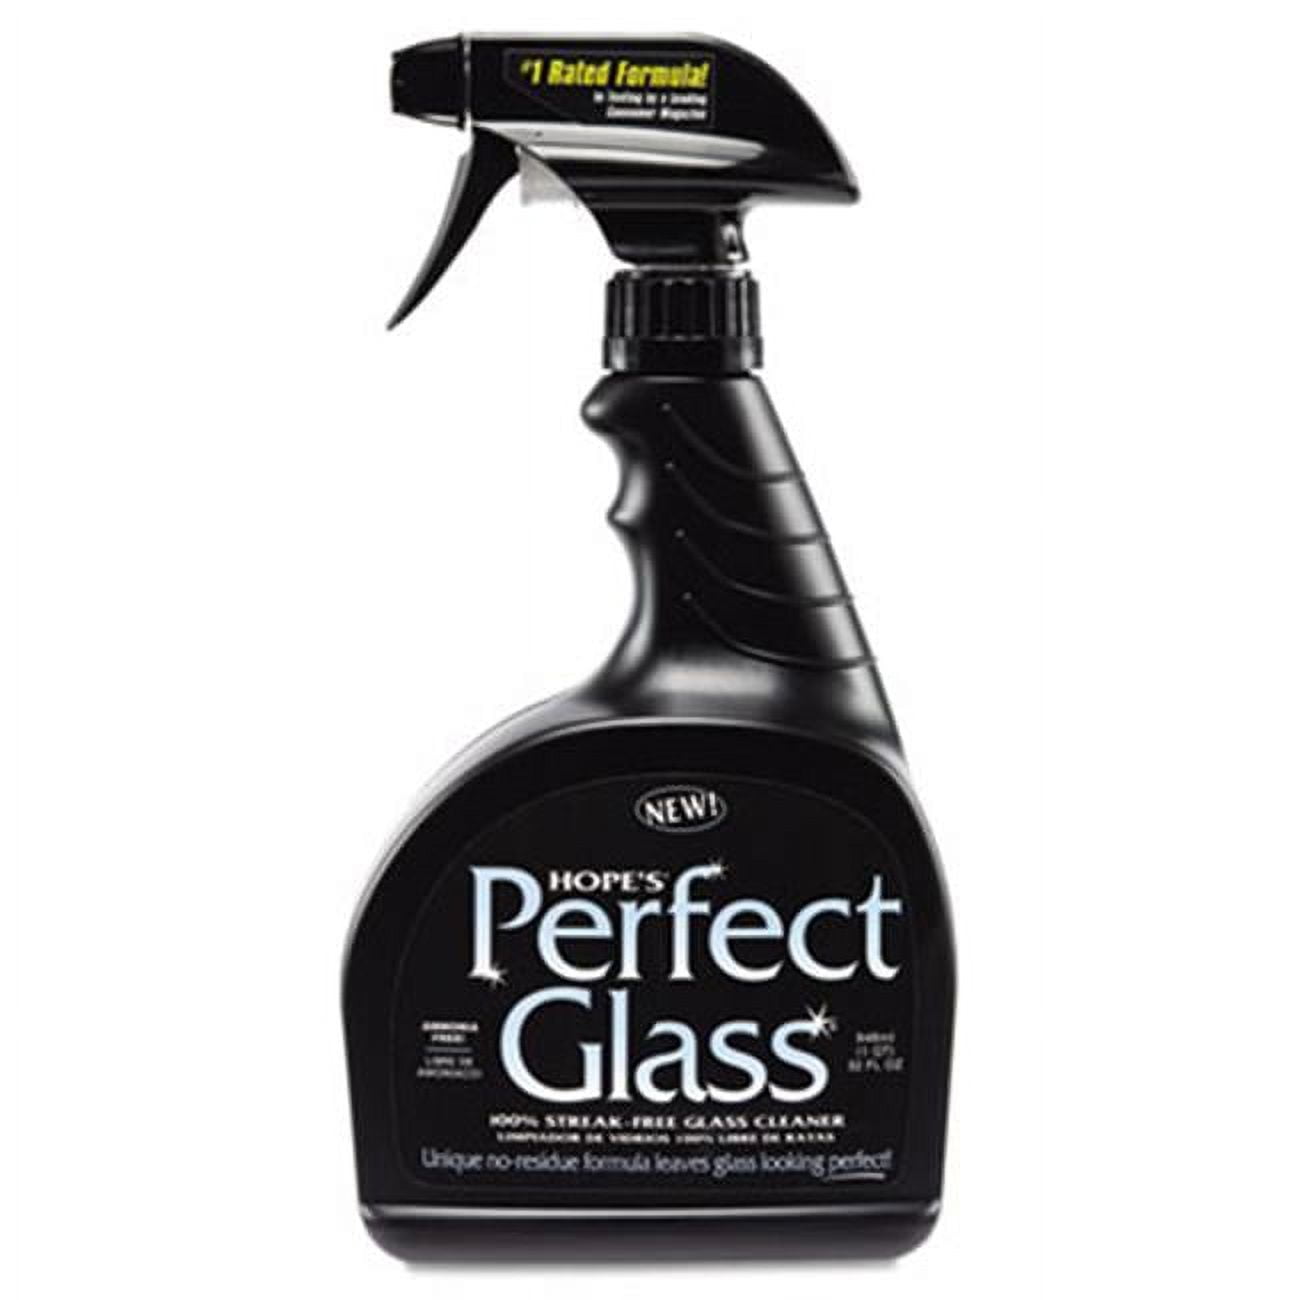 Rain-X 630019 Auto Glass Cleaner, 32 fl. oz, 3 Pack